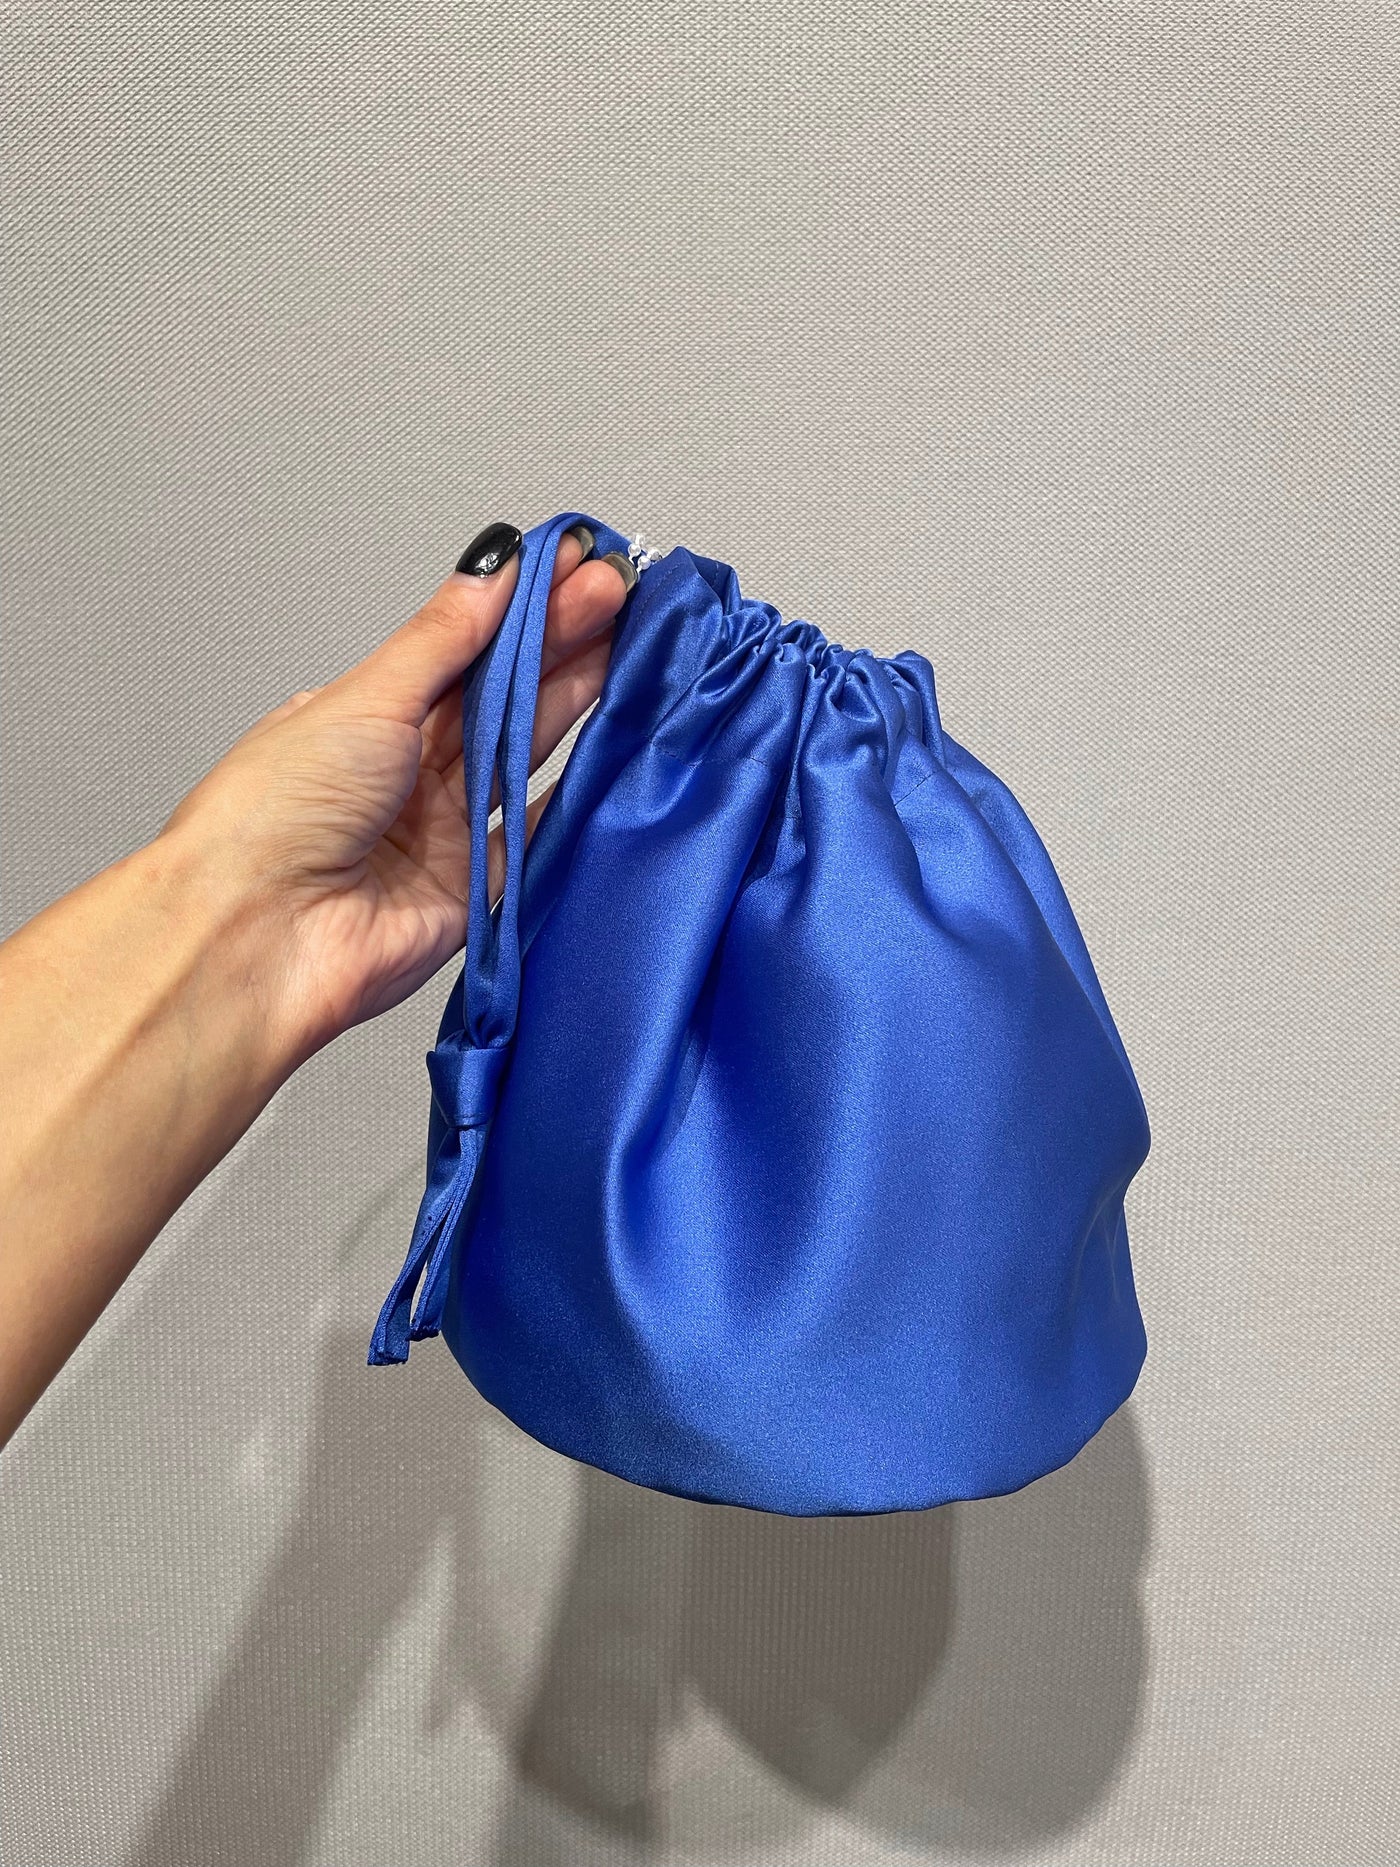 Bluebell bag